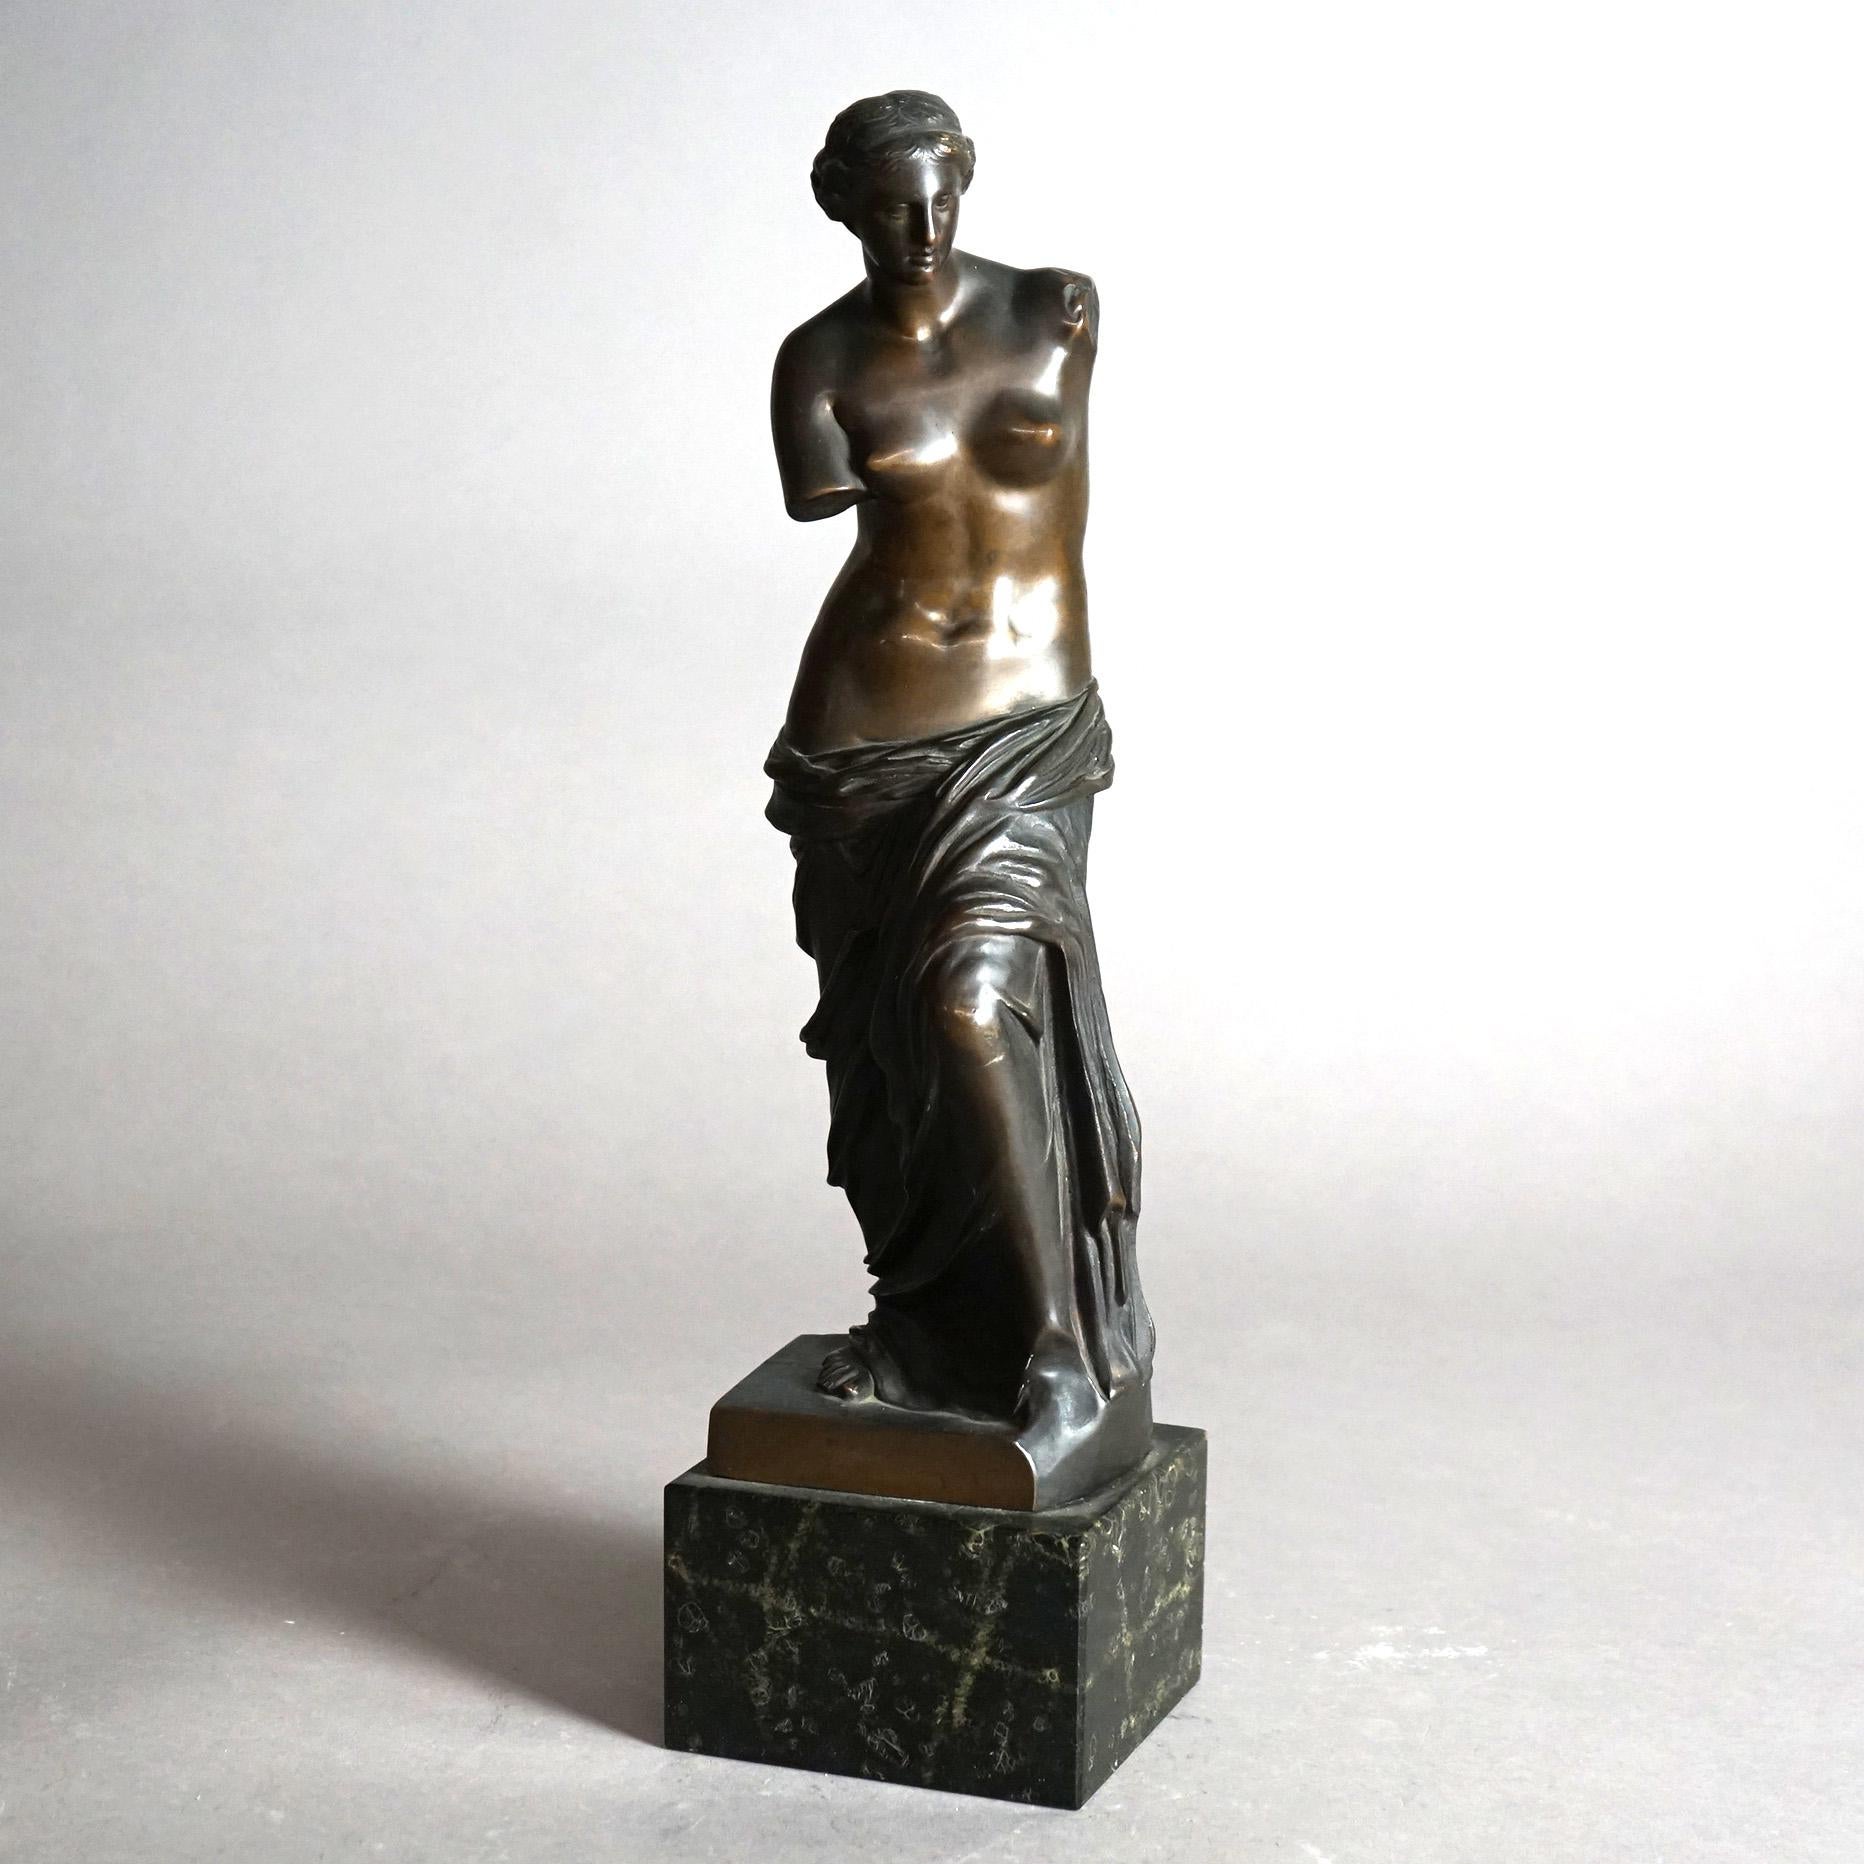 Cast Antique Venus De Milo Bronze Sculpture on Black Marble Plinth 19th C